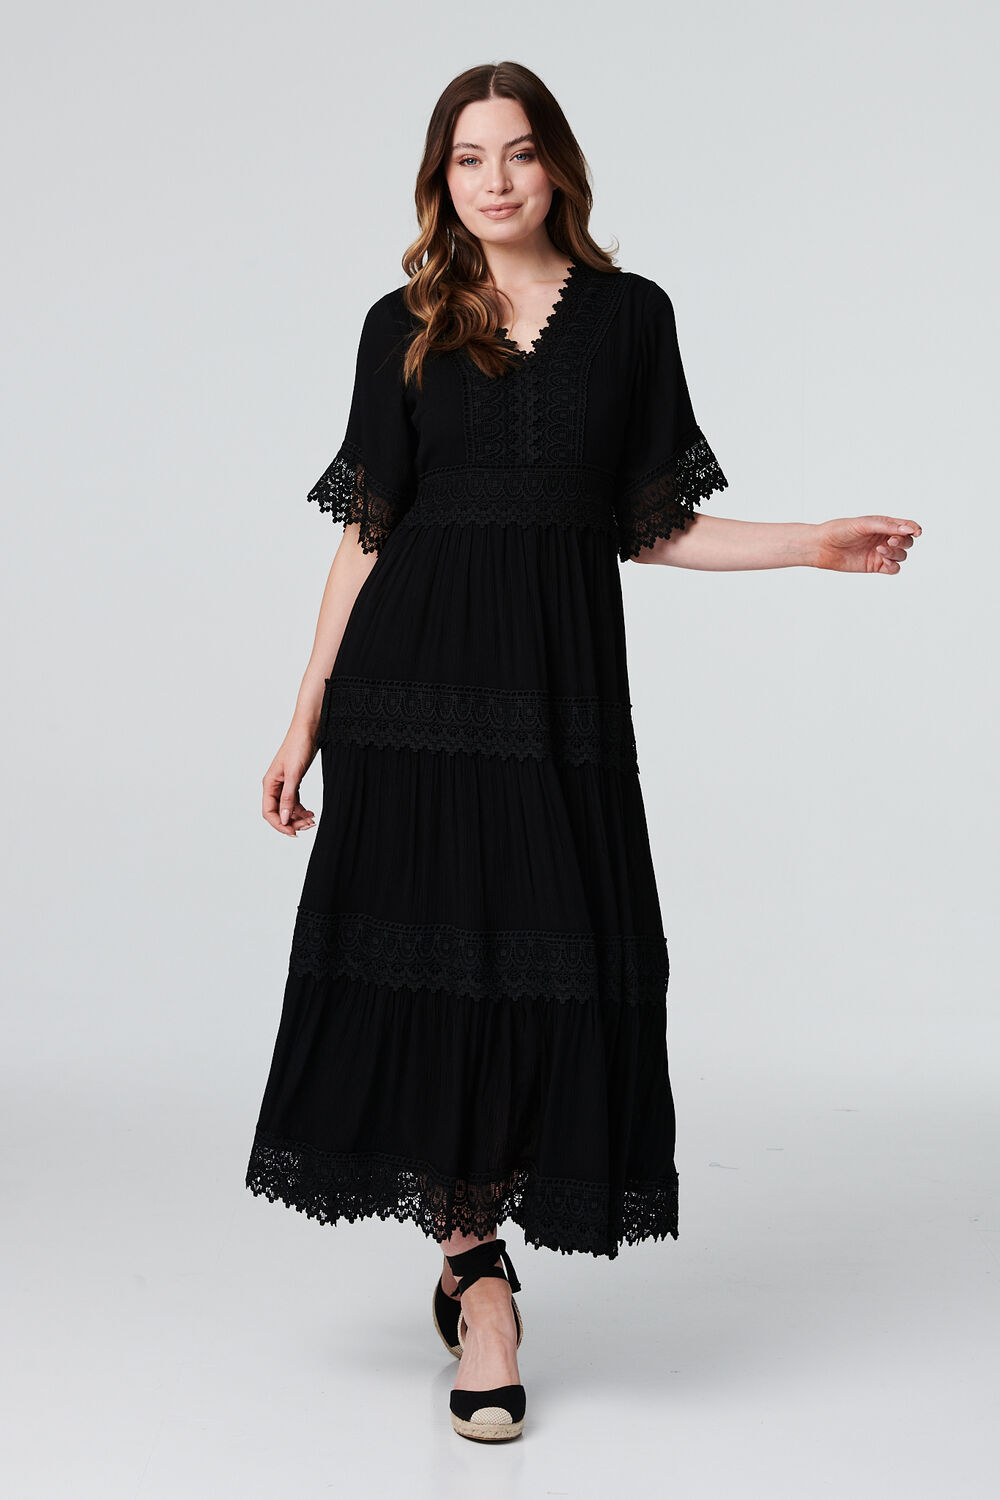 Izabel London Black - Short Sleeve Crochet Maxi Dress, Size: 16